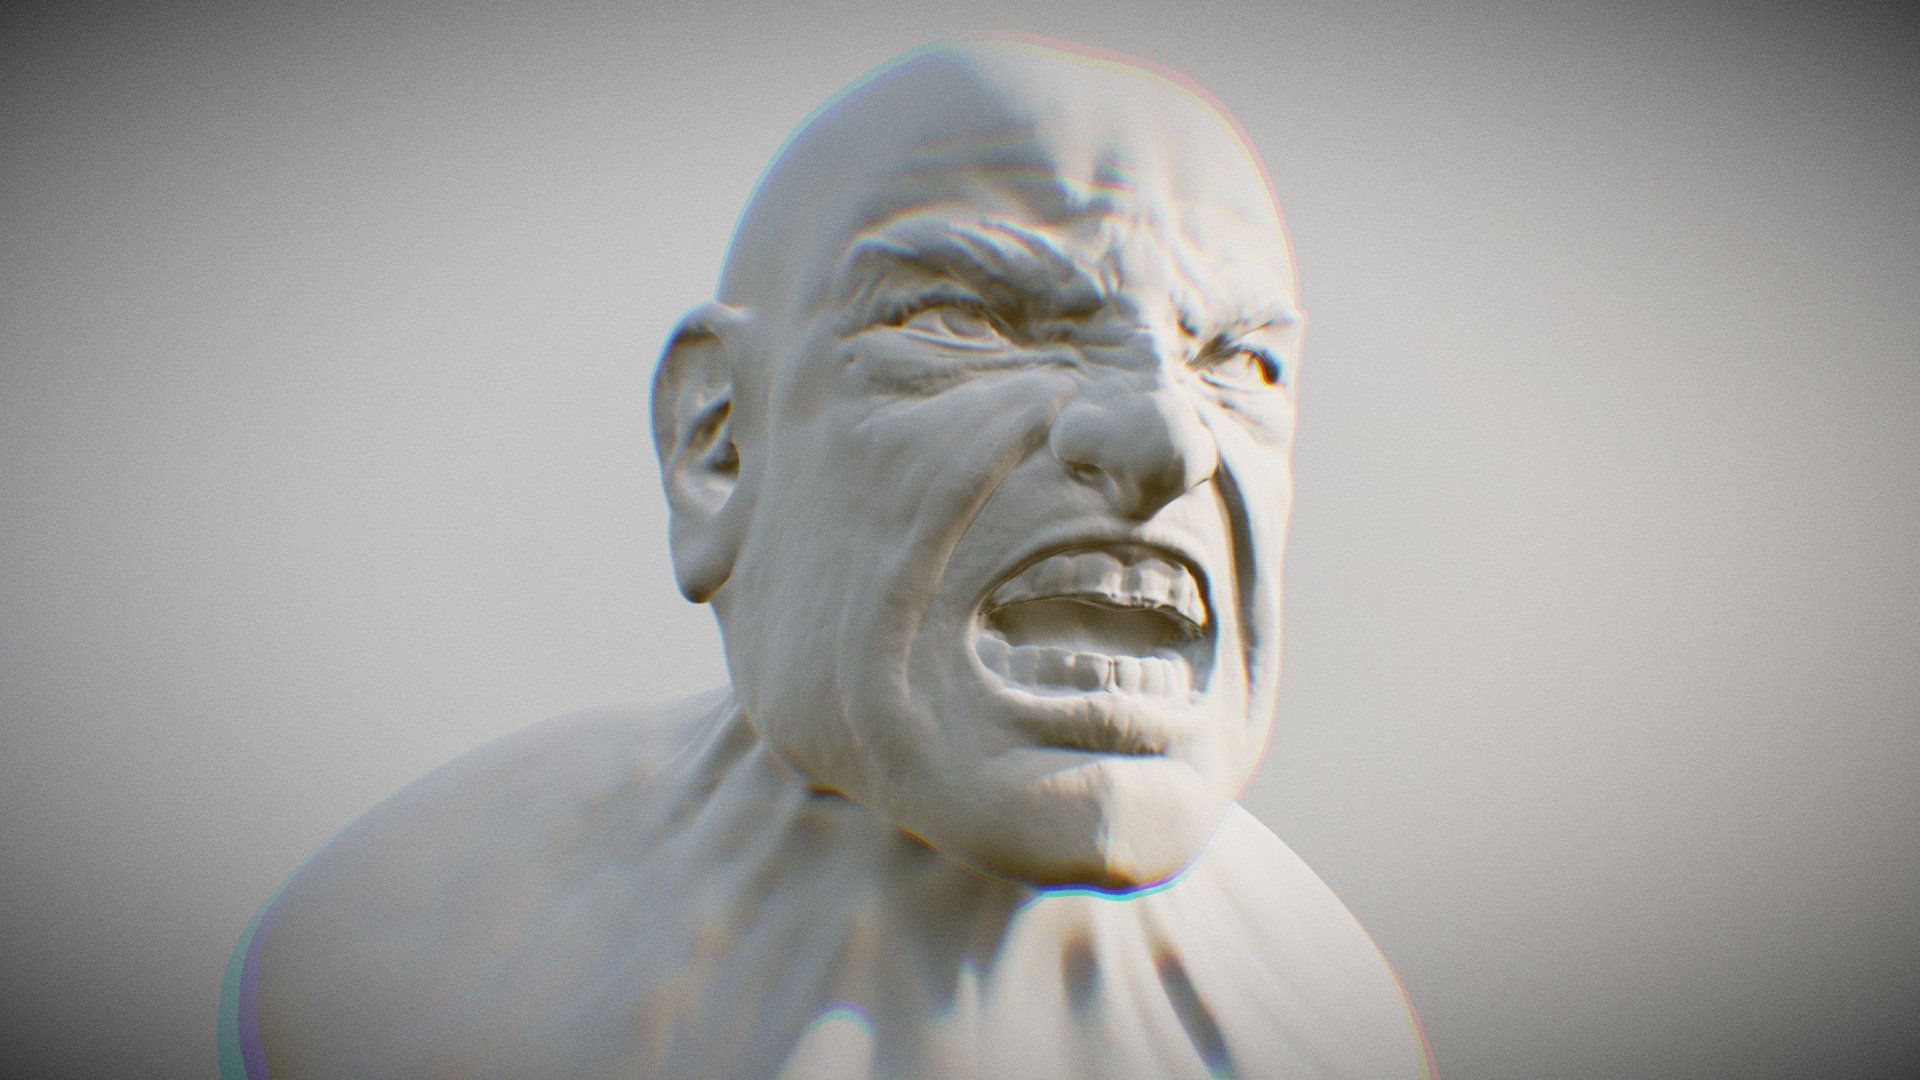 Quuick sculpt in sculptris - Angry - 3D model by junwei.ng 3d model